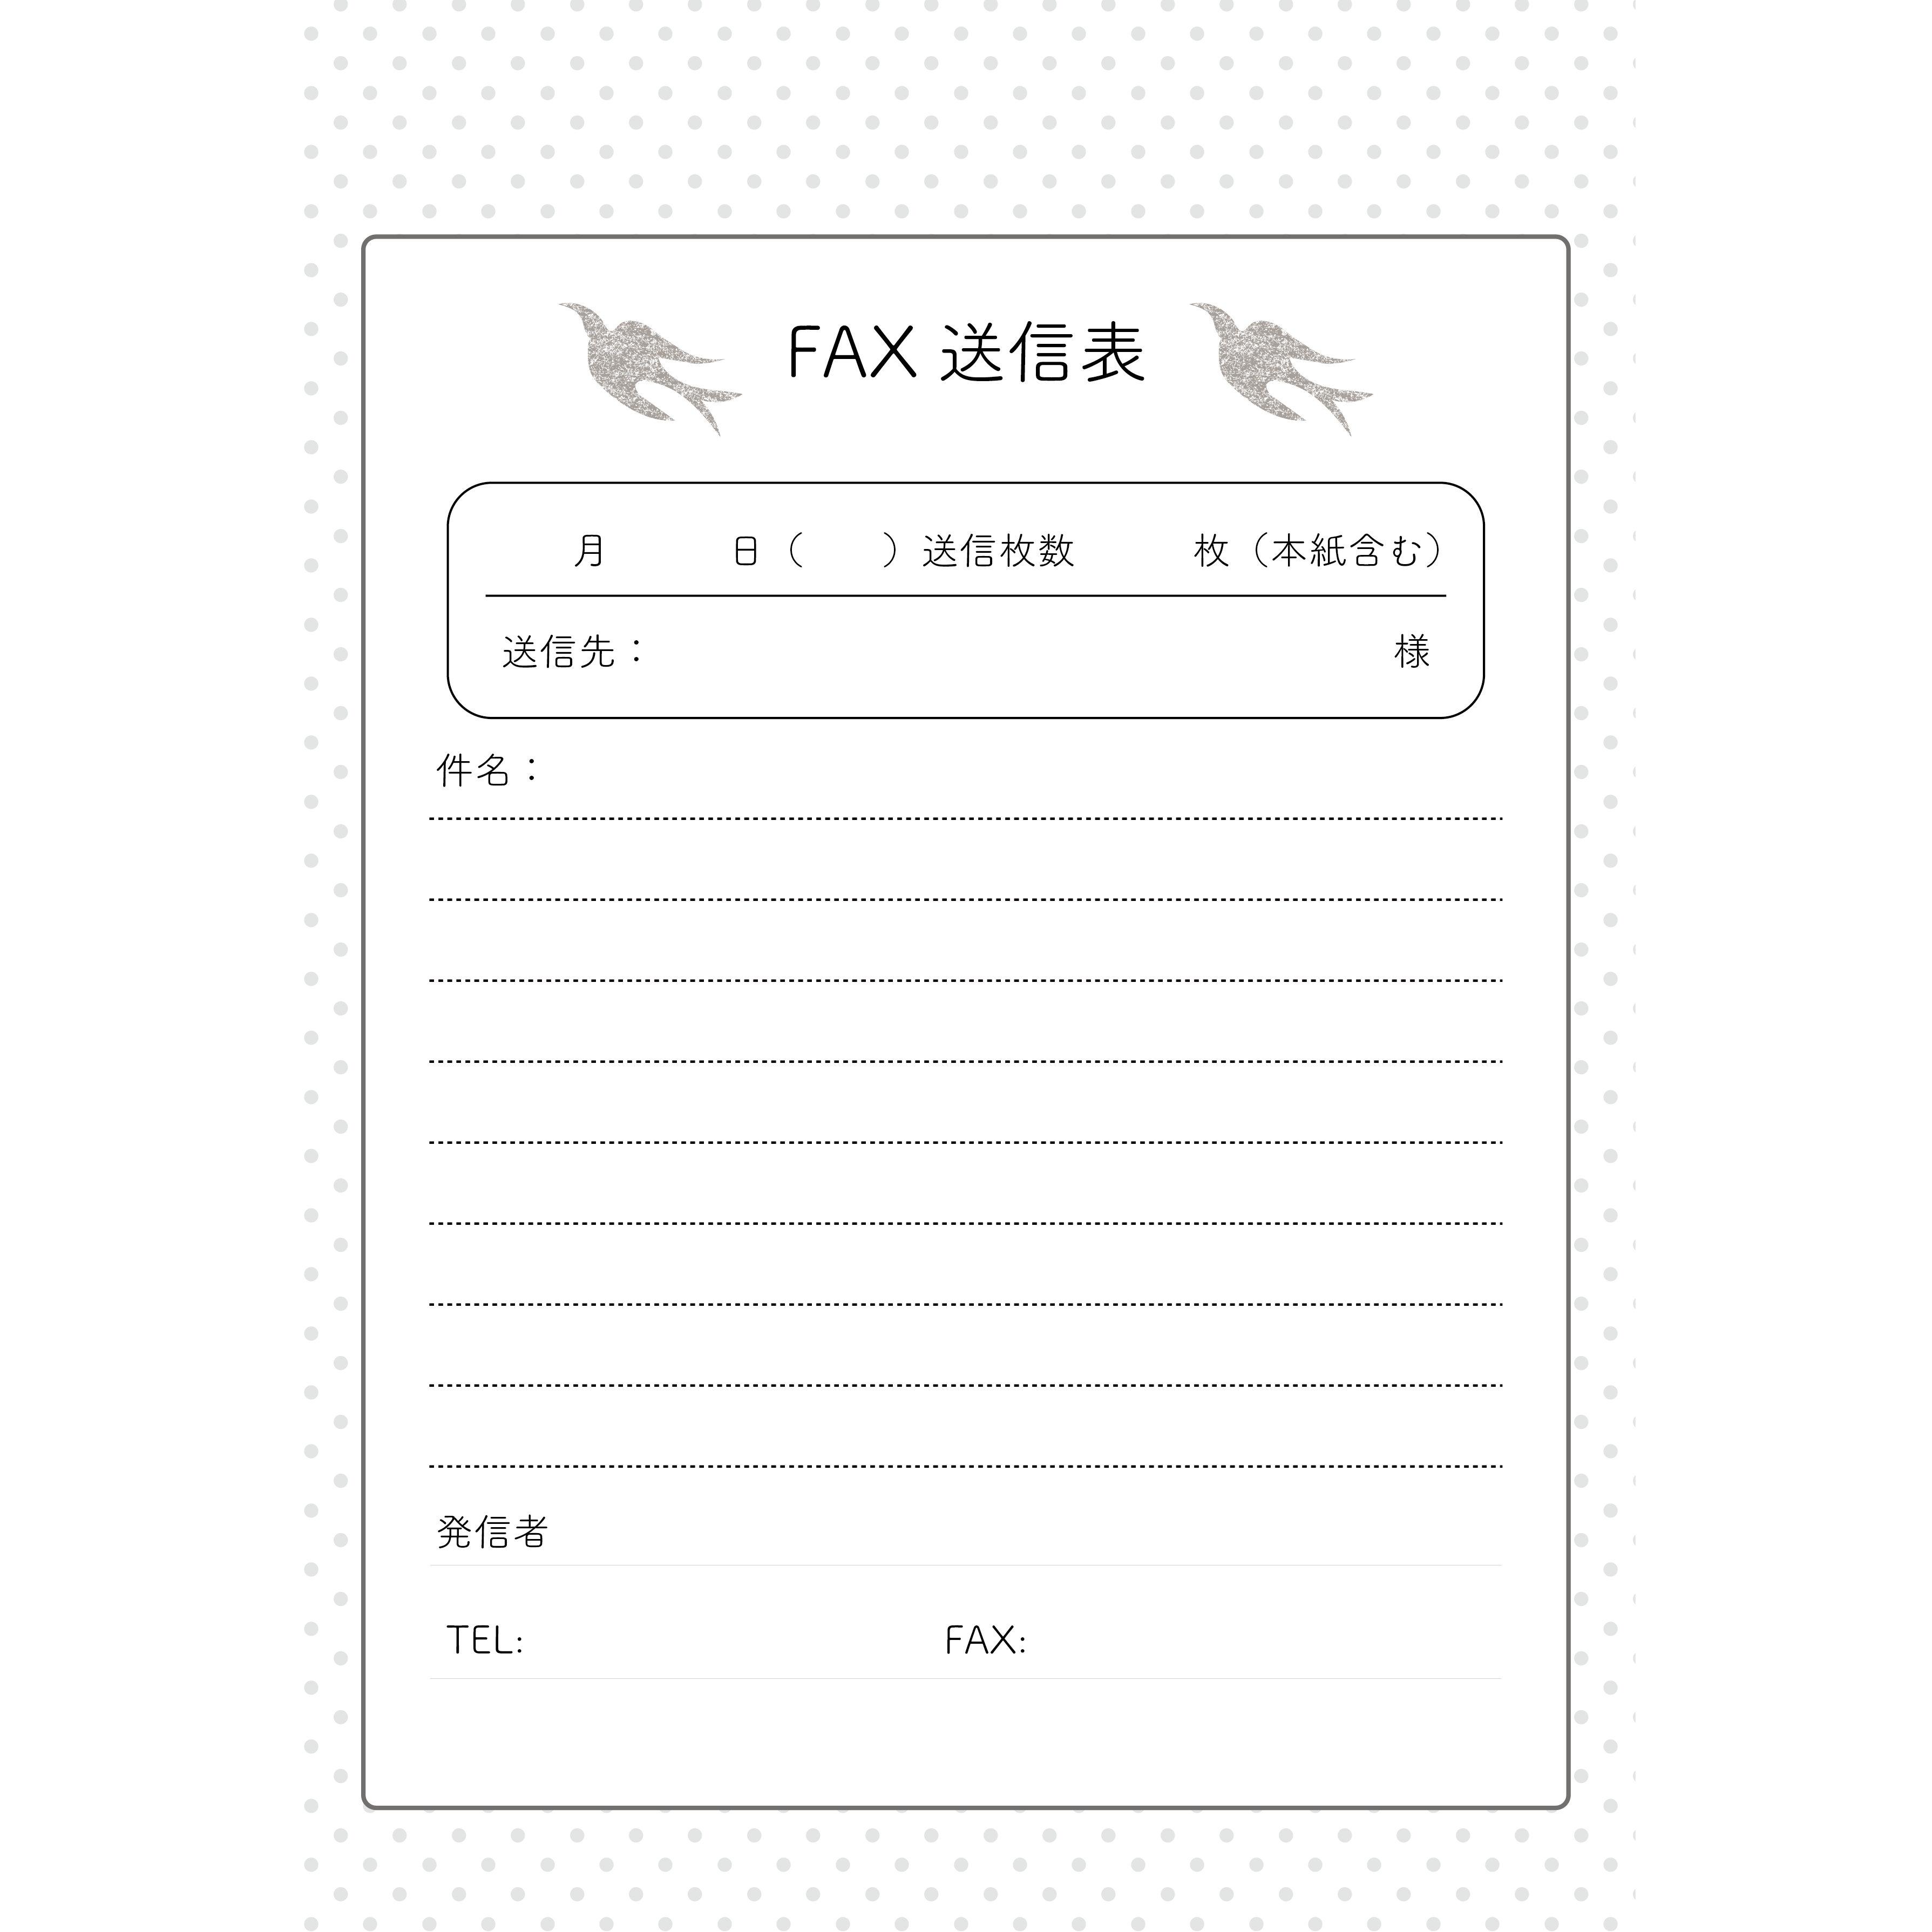 Fax ファックス 送信用紙 フォーマット テンプレート イラスト